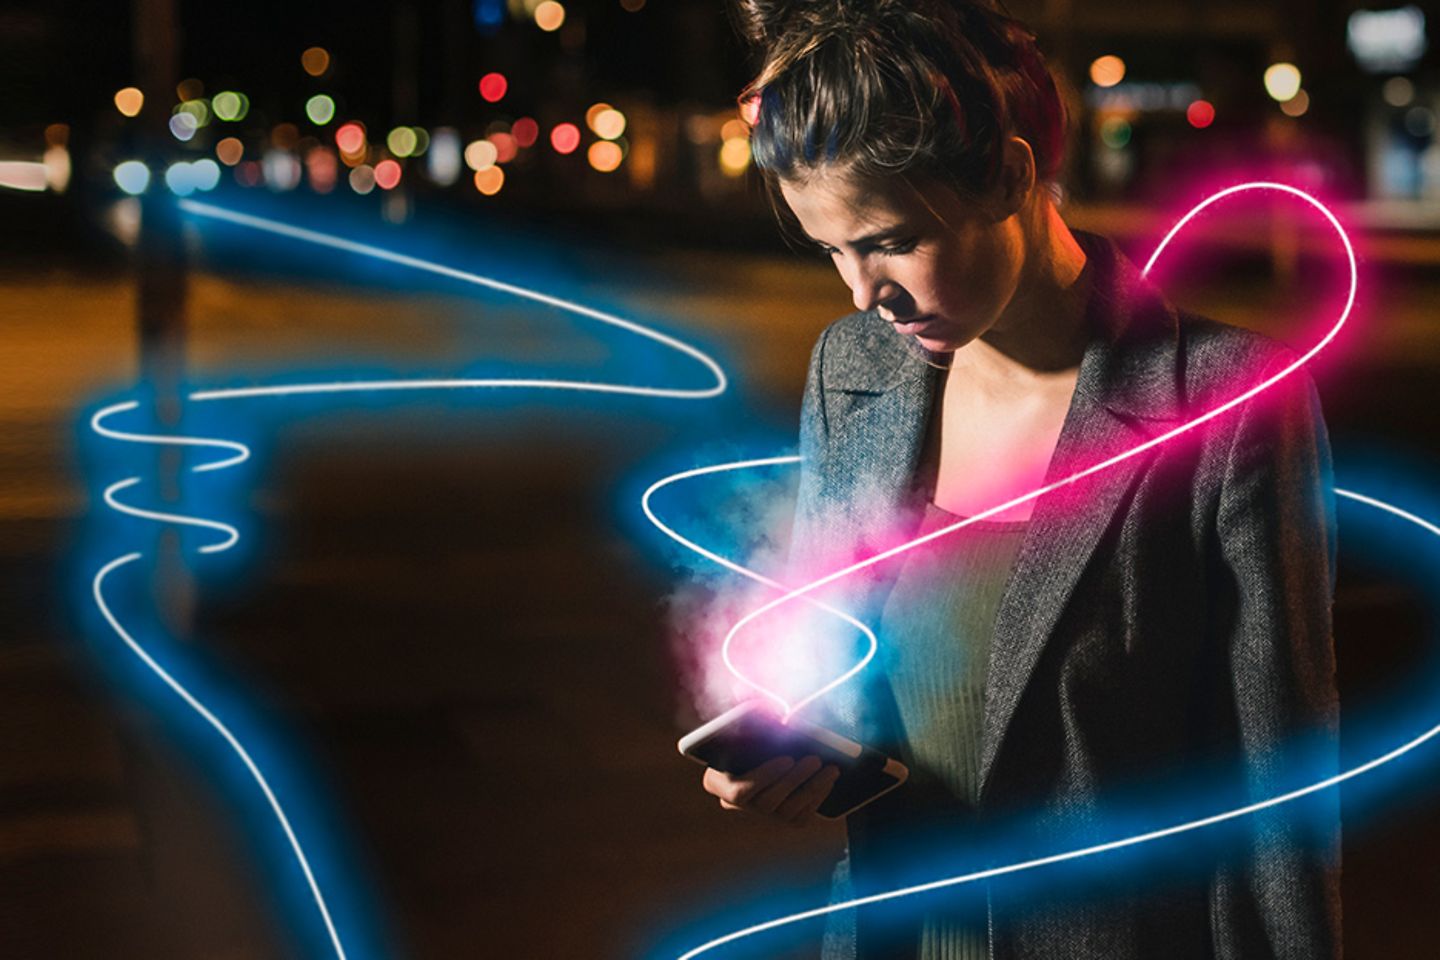 Frau steht auf nächtlicher Straße und blickt auf ihr leuchtendes Smartphone. Pinke und blaue Leuchtspuren umgeben sie.